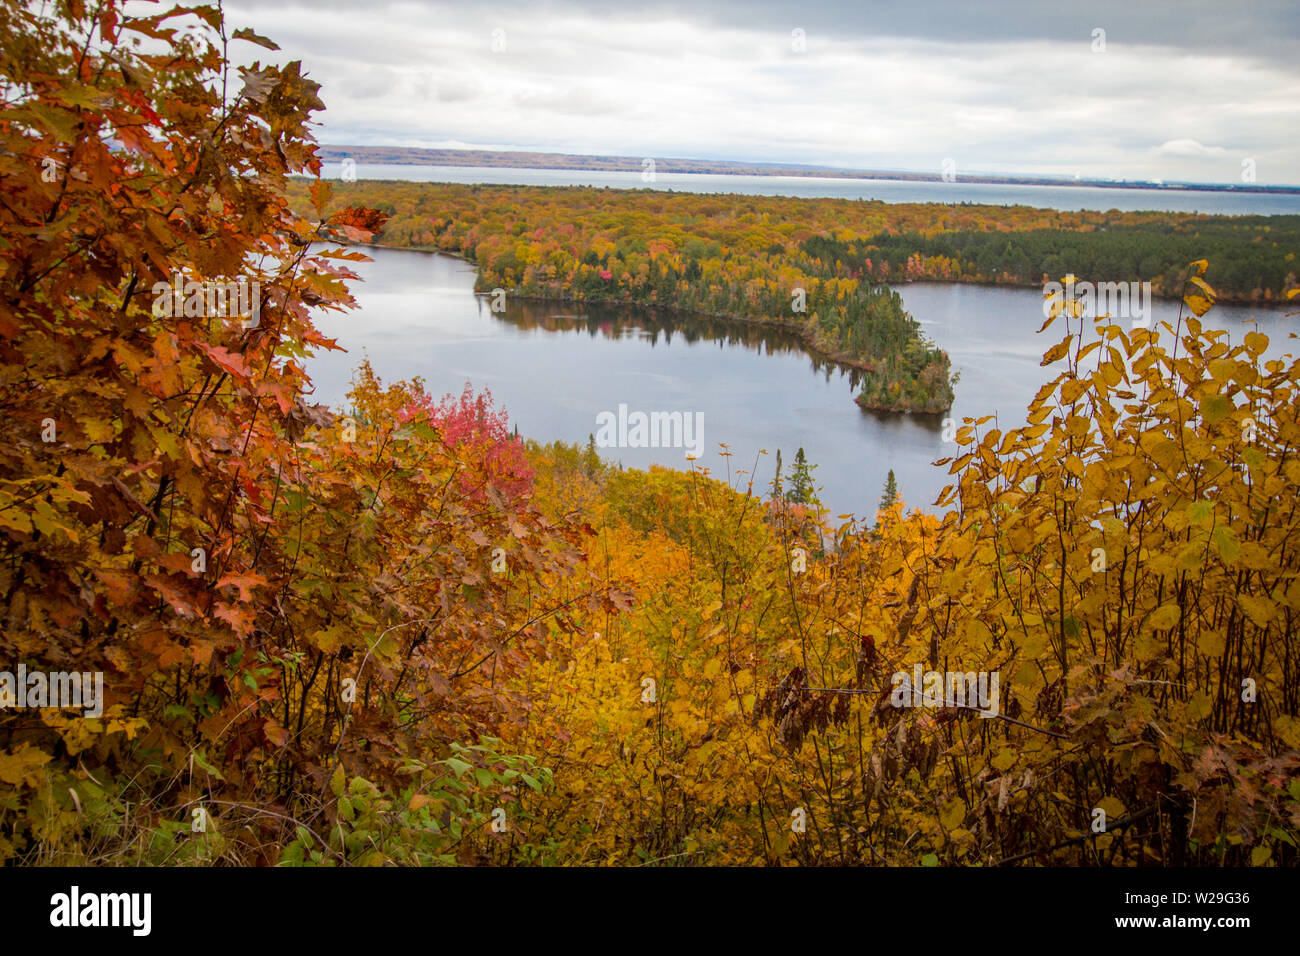 Panorama autunnale del Michigan. Colori autunnali vivaci nella foresta del Michigan settentrionale con le vaste acque blu del lago Superior sullo sfondo. Foto Stock